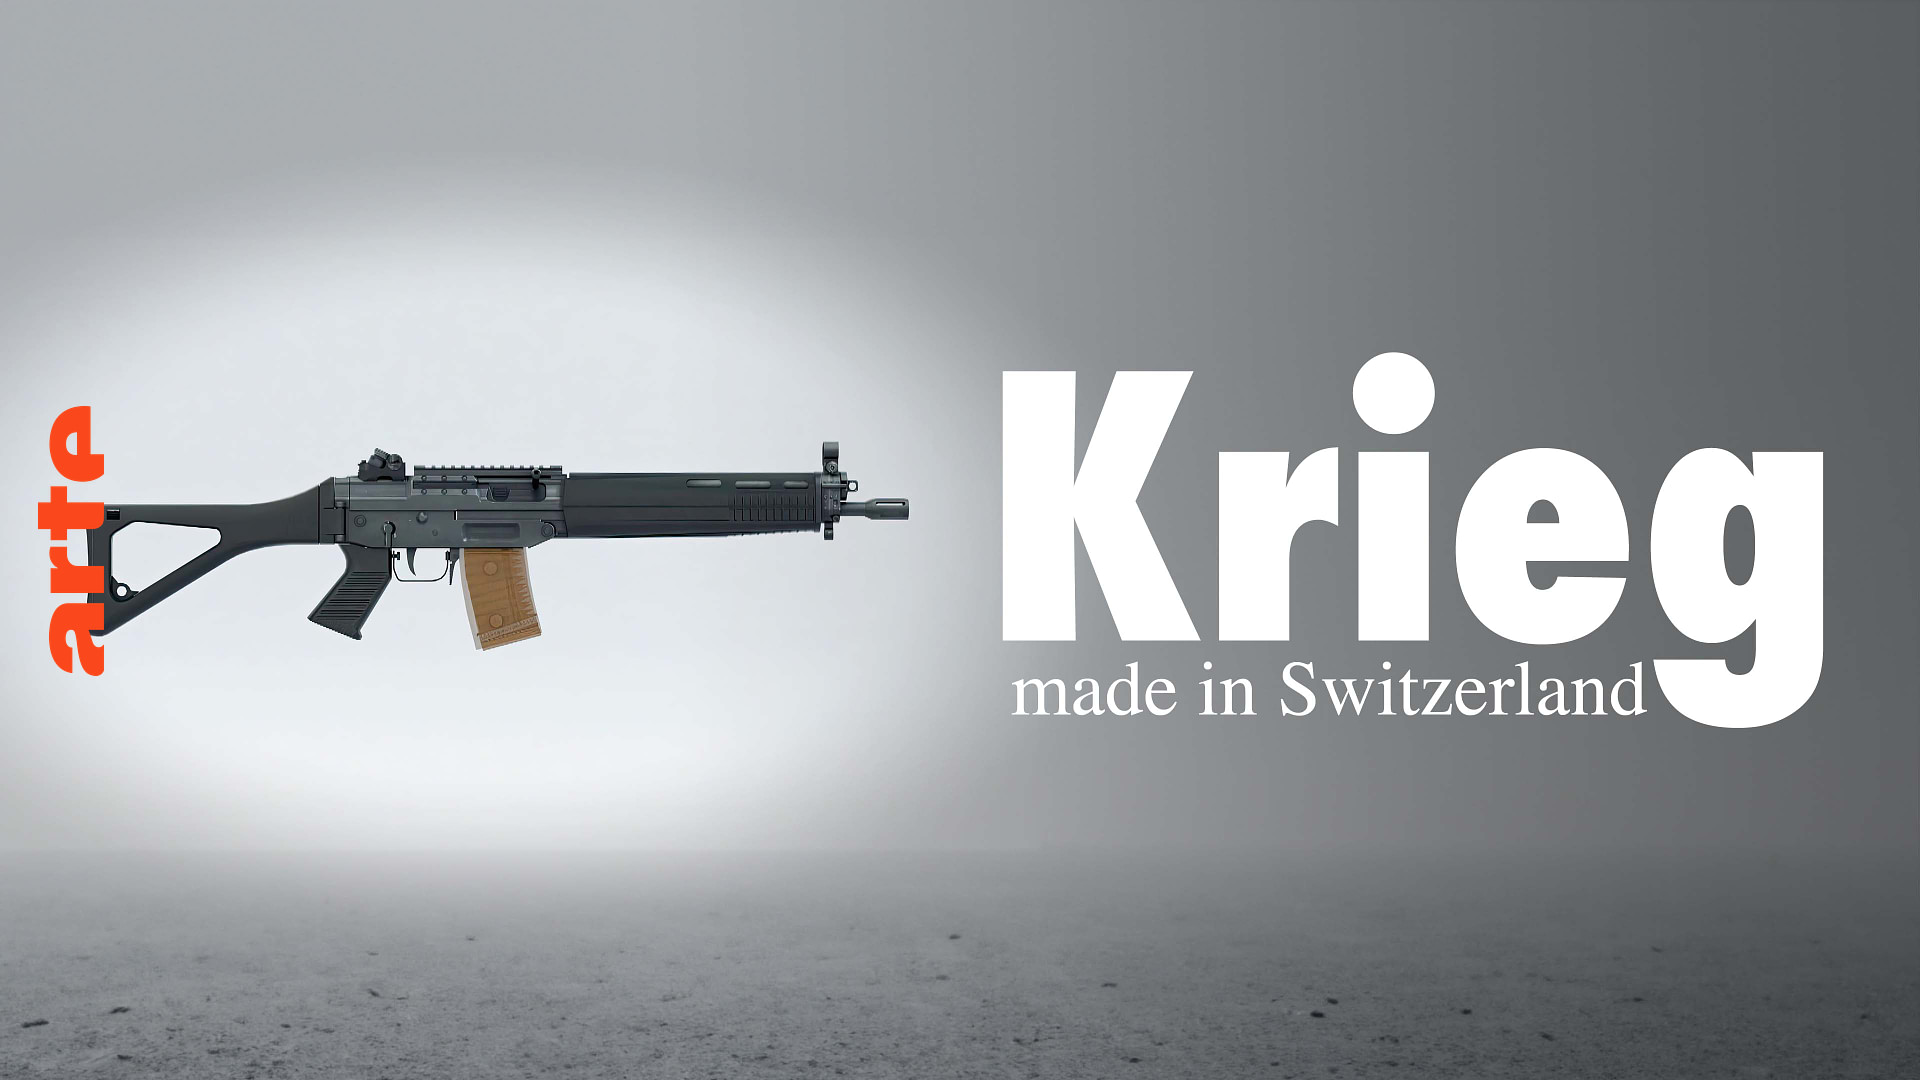 Krieg made in Switzerland